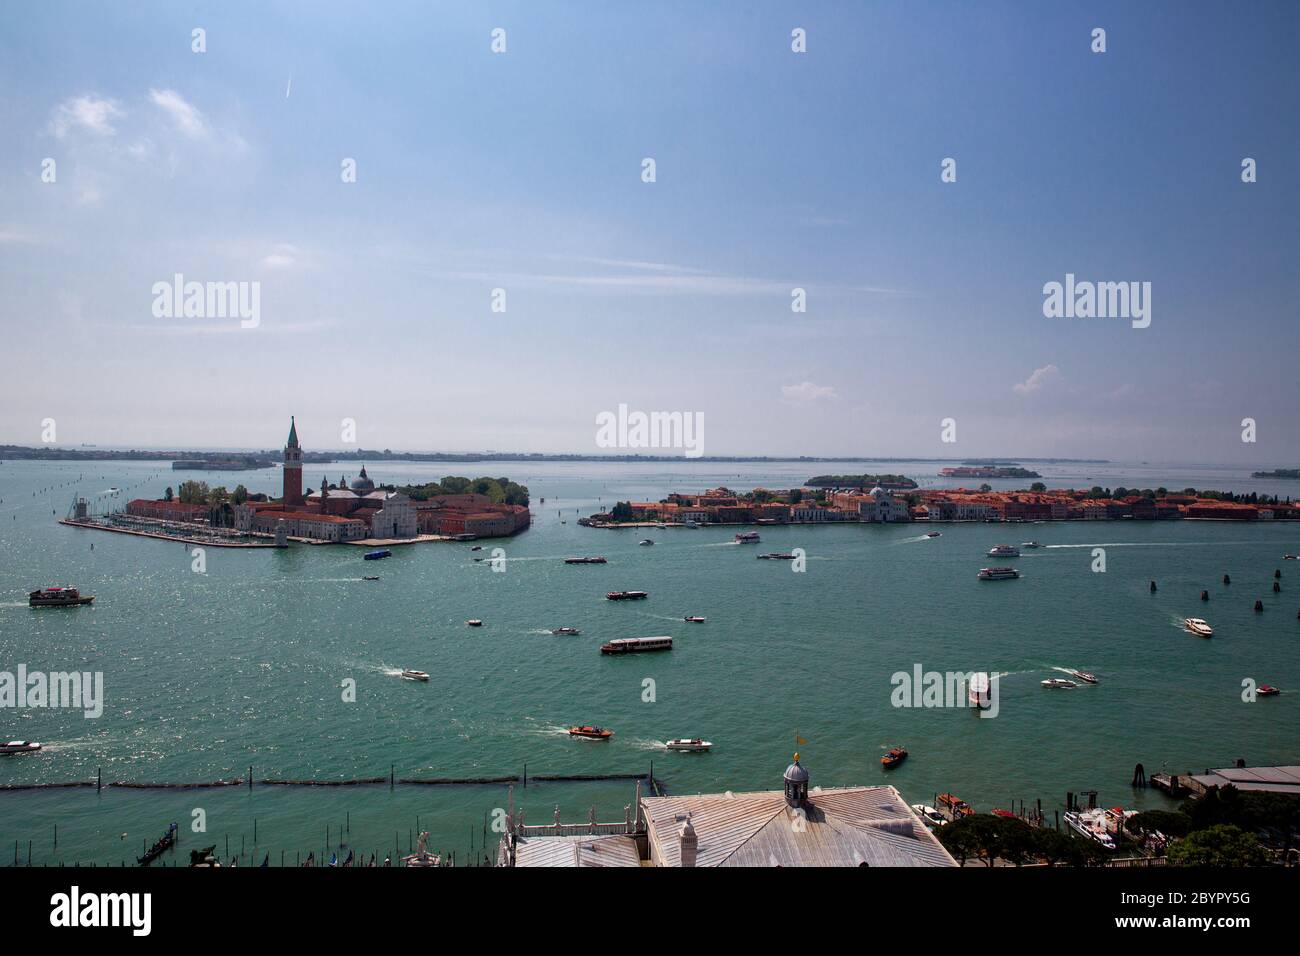 Islands of San Giorgio Maggiore, Giudecca and San Lazzaro degli Armeni. Heavy ship, boat and Vaporetto traffic in Venetian Lagoon as seen from St. Mar Stock Photo